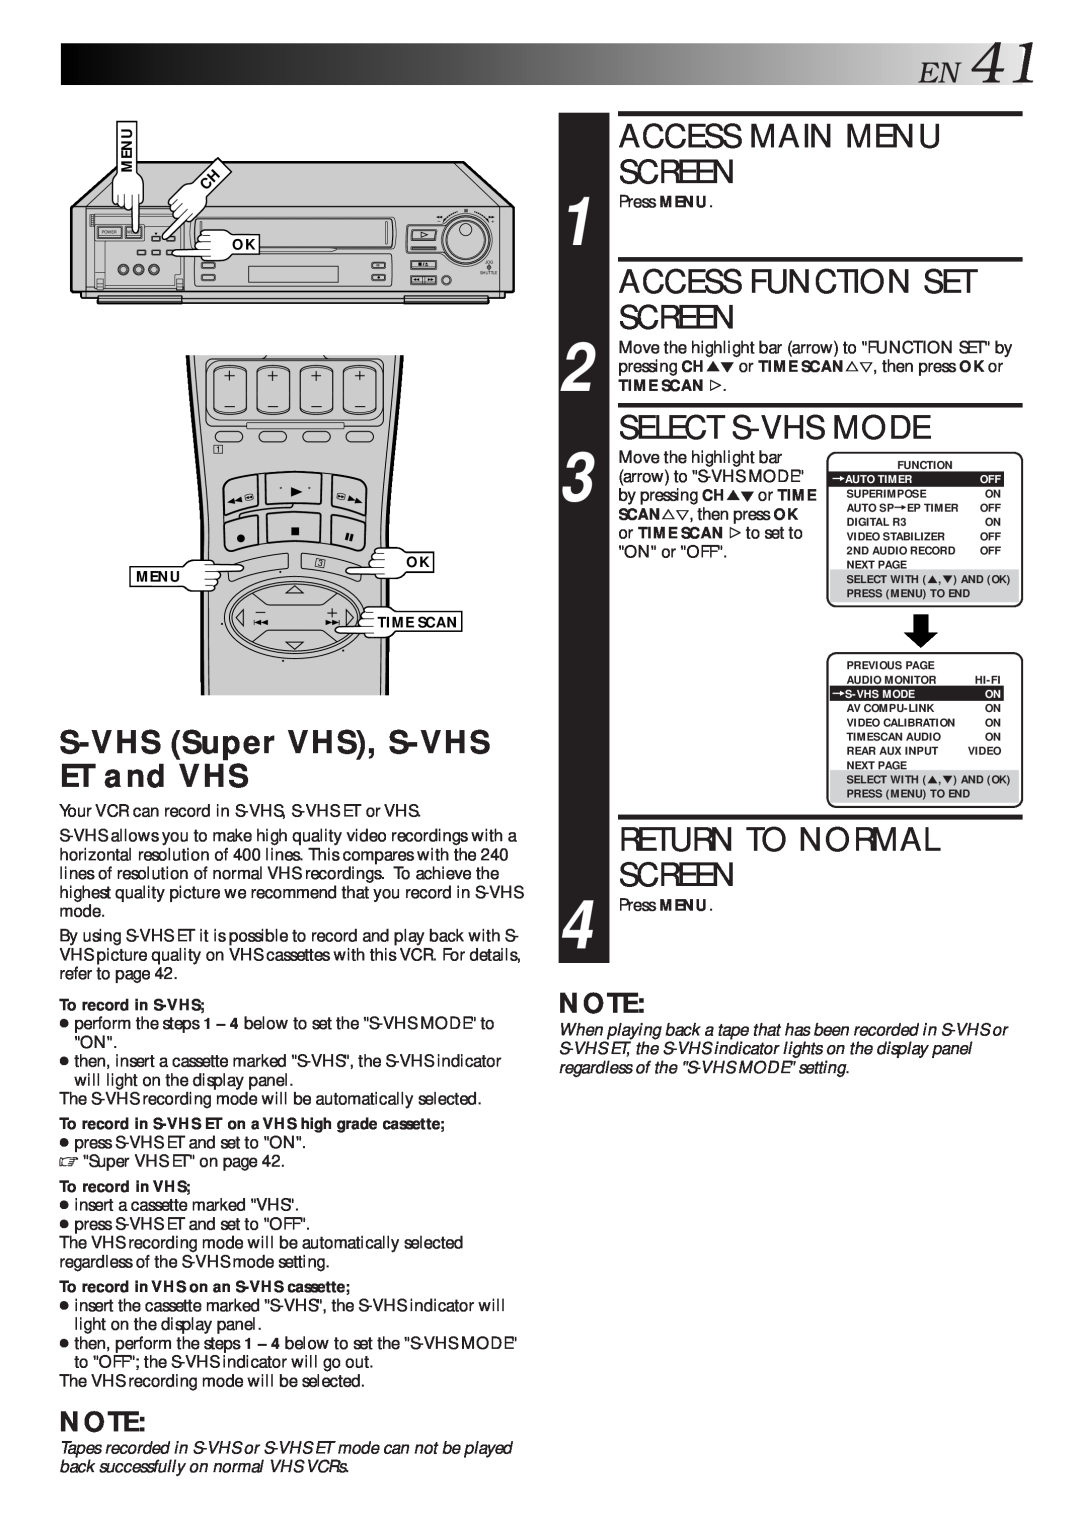 JVC HR-S7500U Access Main Menu, Select S-Vhs Mode, S-VHS Super VHS, S-VHS ET and VHS, EN41, Screen, Access Function Set 